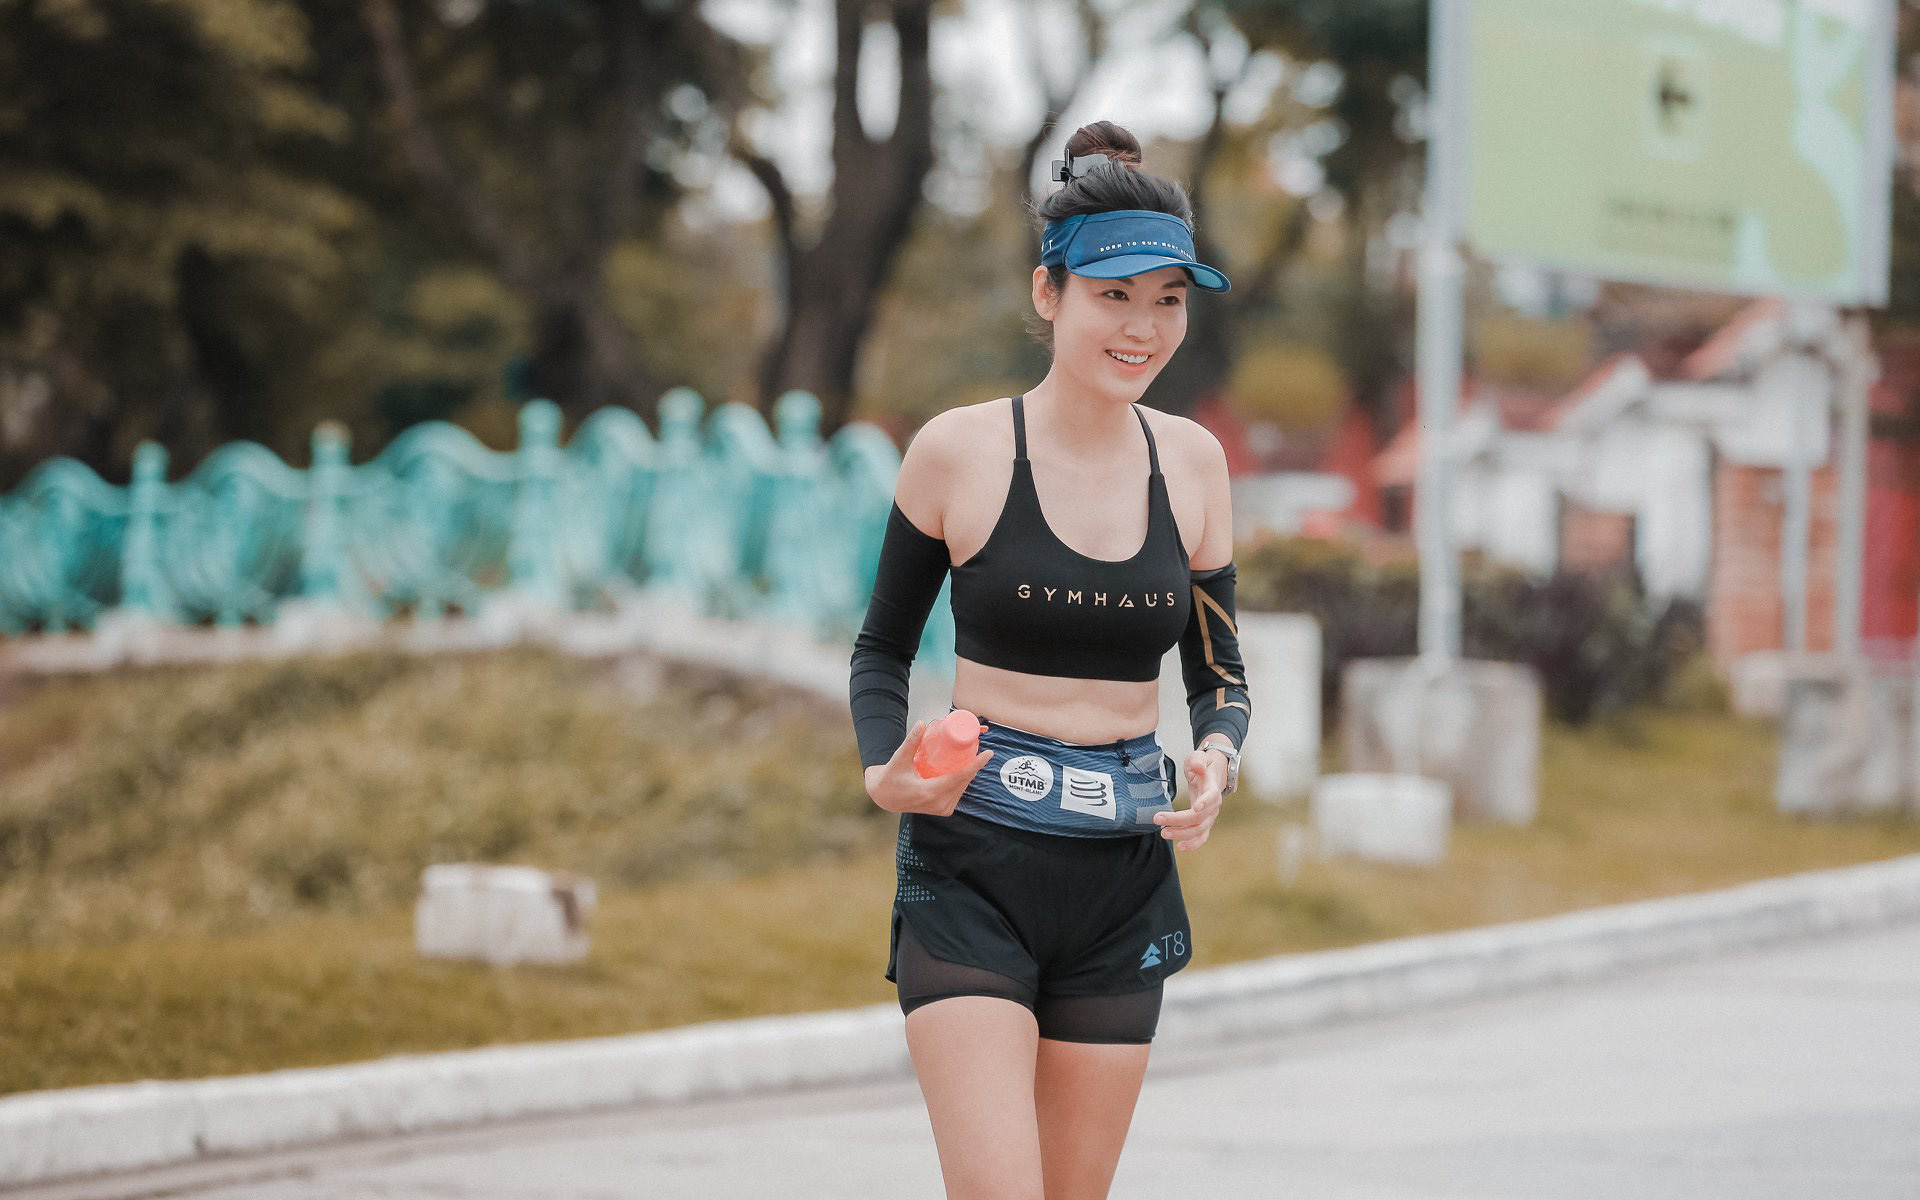 Hoa hậu Thu Thủy đột ngột qua đời vì đột quỵ sau khi chạy bộ vào sáng sớm 